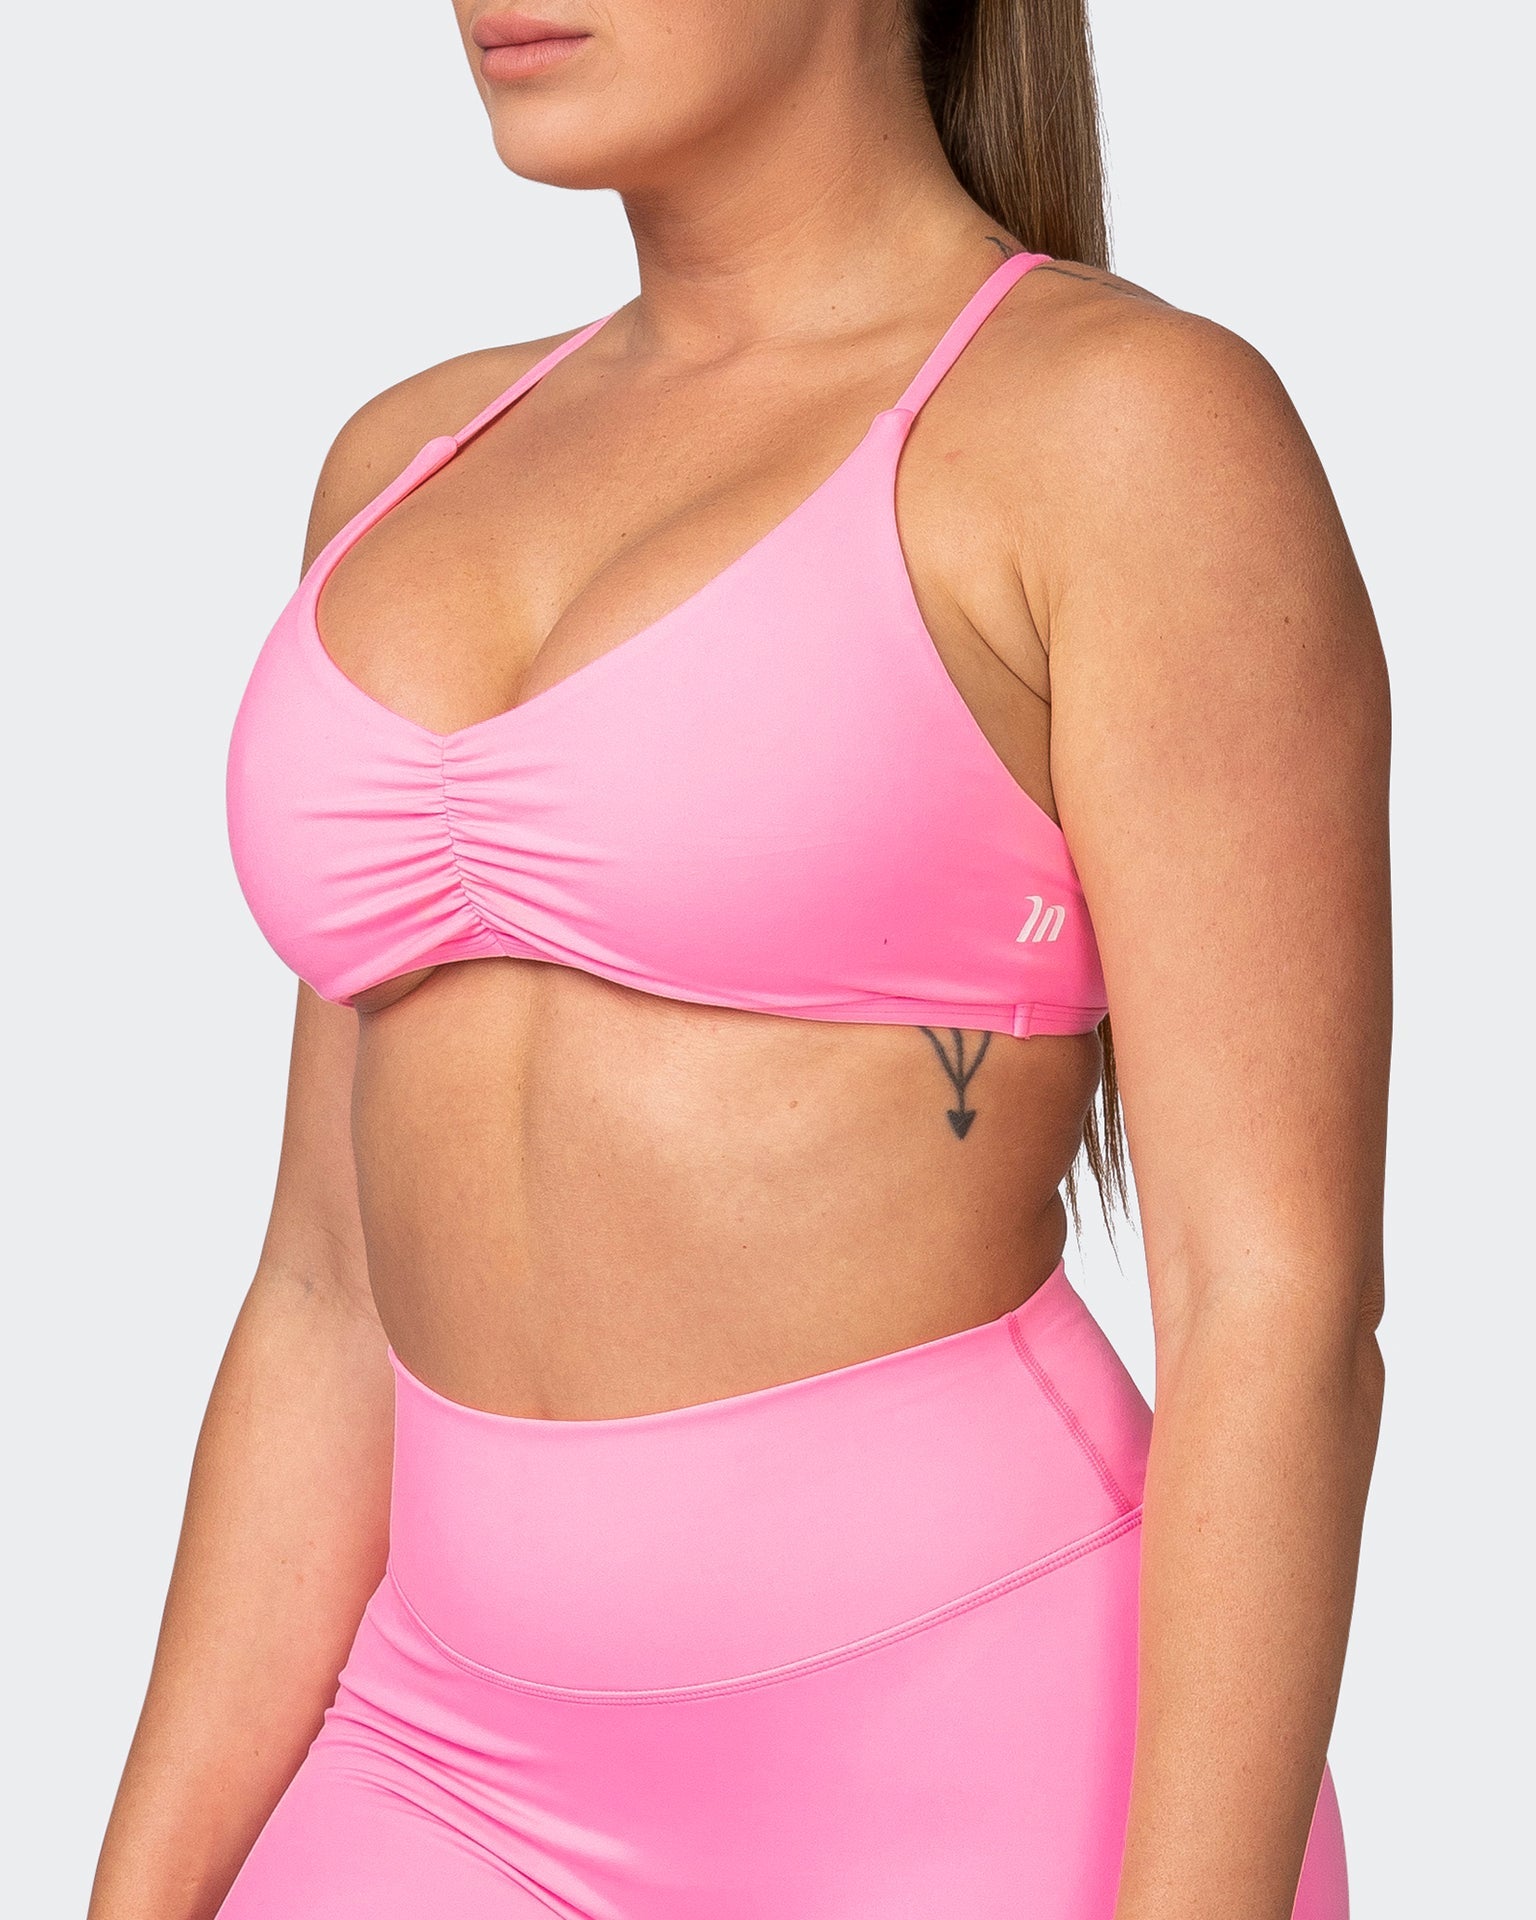 musclenation Sports Bras Millie Bralette - Shocking Pink